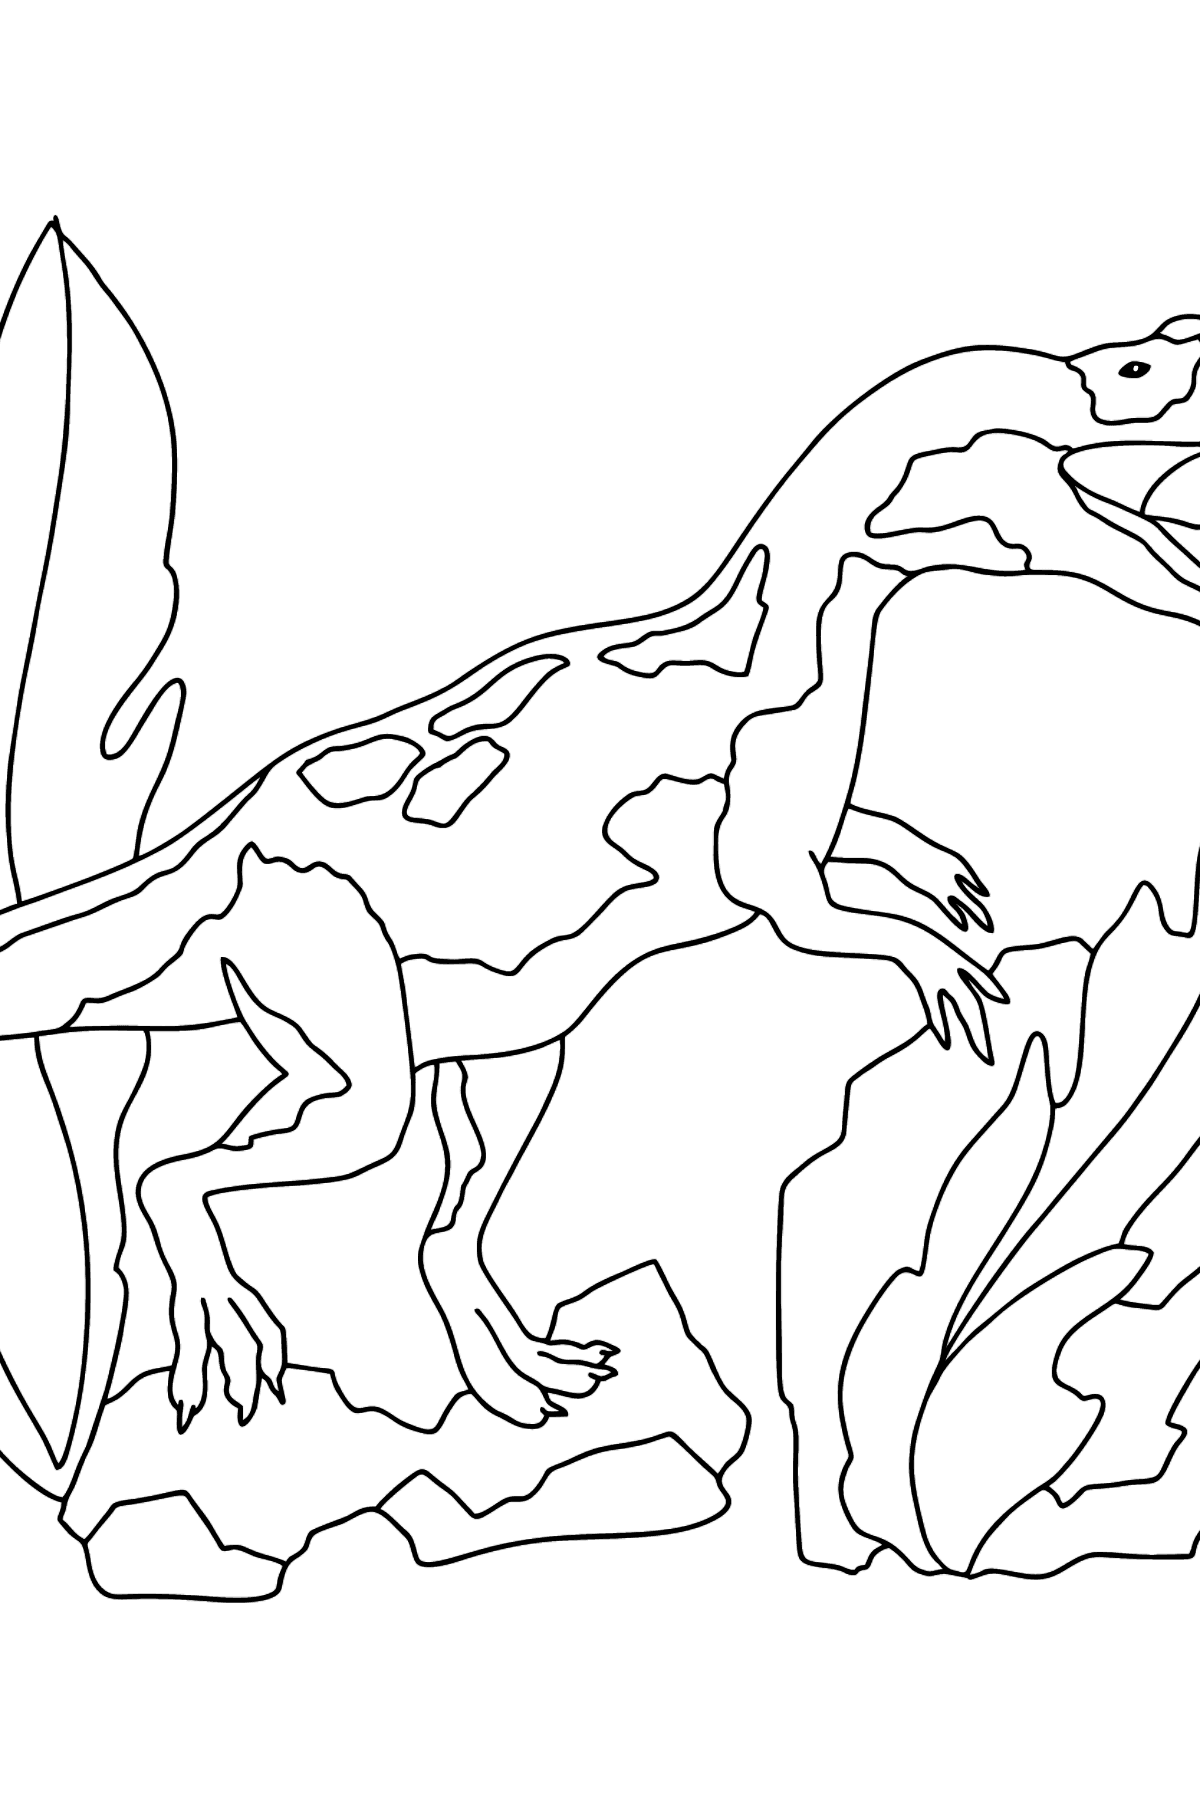 Dibujo para colorear de dinosaurio jurásico (difícil) - Dibujos para Colorear para Niños